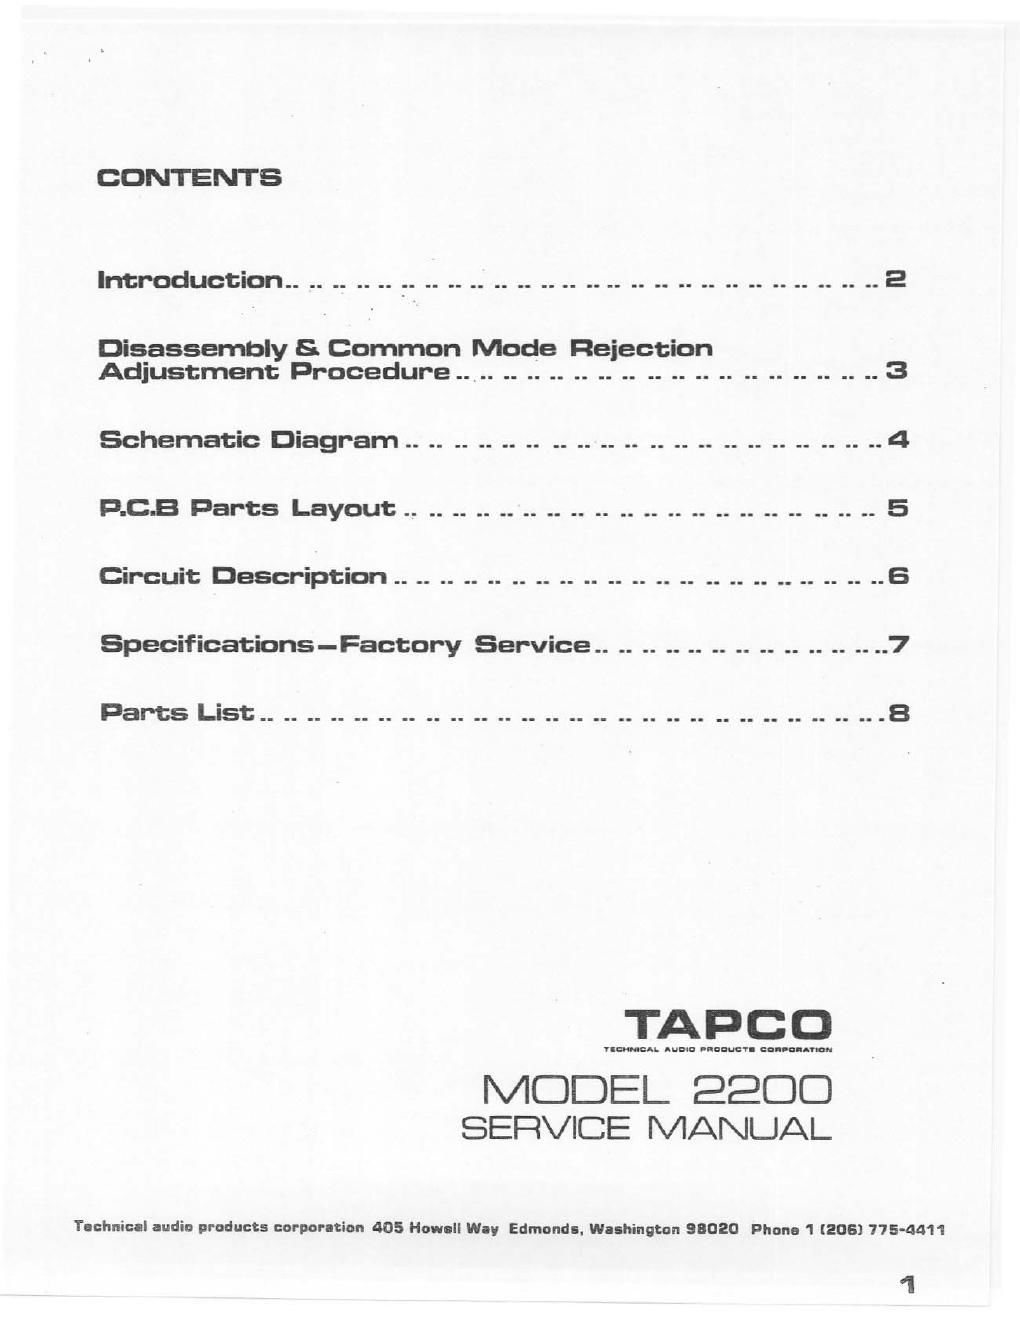 tapco 2200 service manual